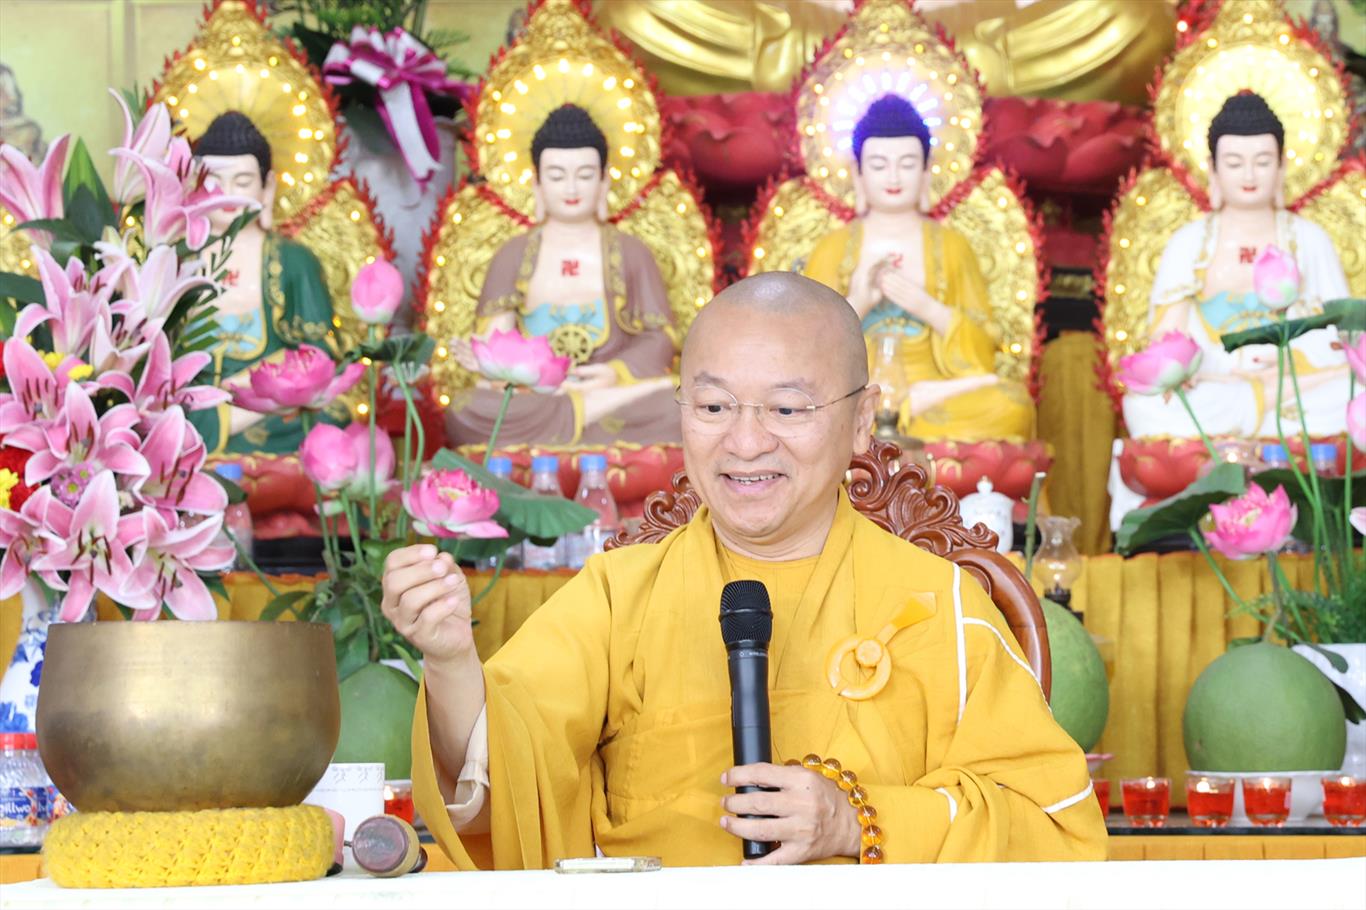 Thượng tọa Thích Nhật Từ thuyết giảng & Quỹ Đạo Phật Ngày Nay cúng dường, tặng từ thiện tại chùa Ân Thọ